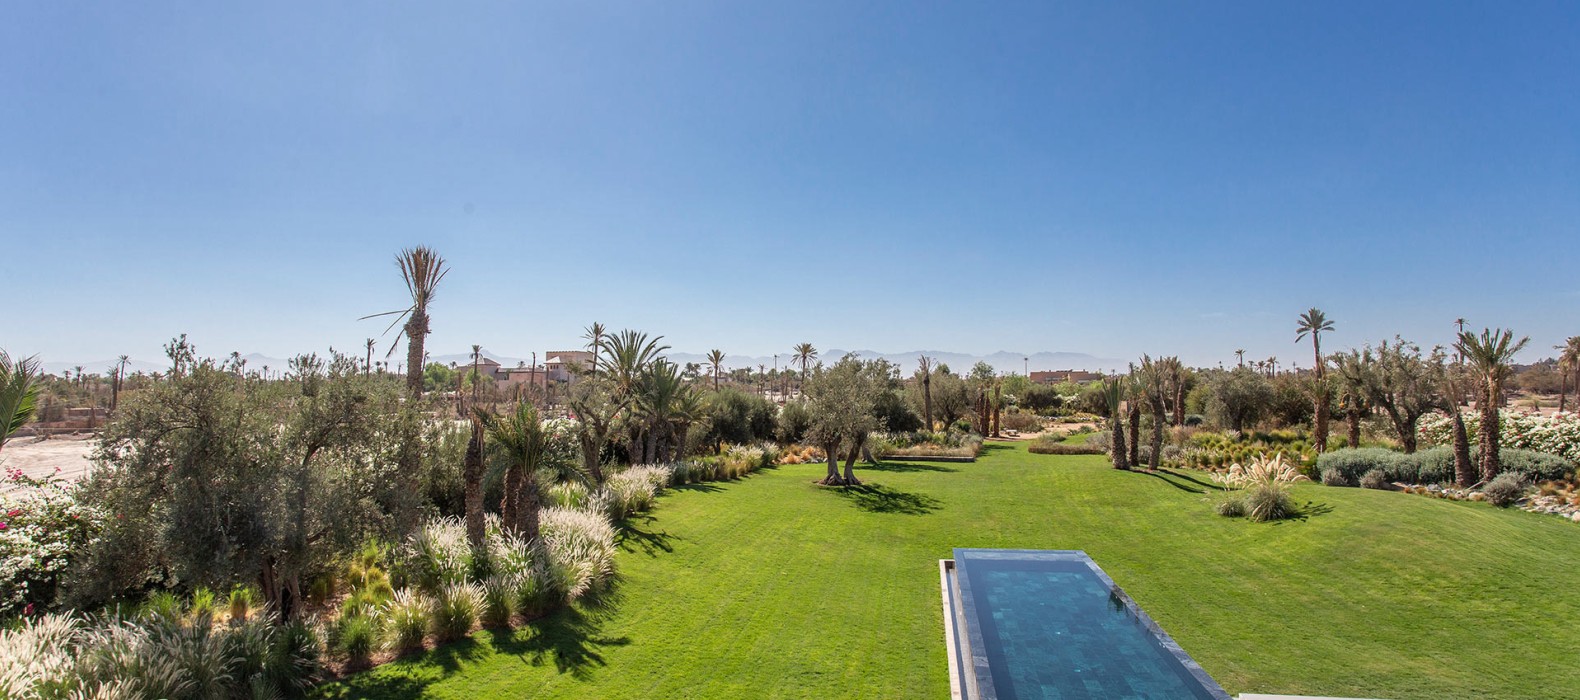 Garden view of Villa Arabesque in Marrakech